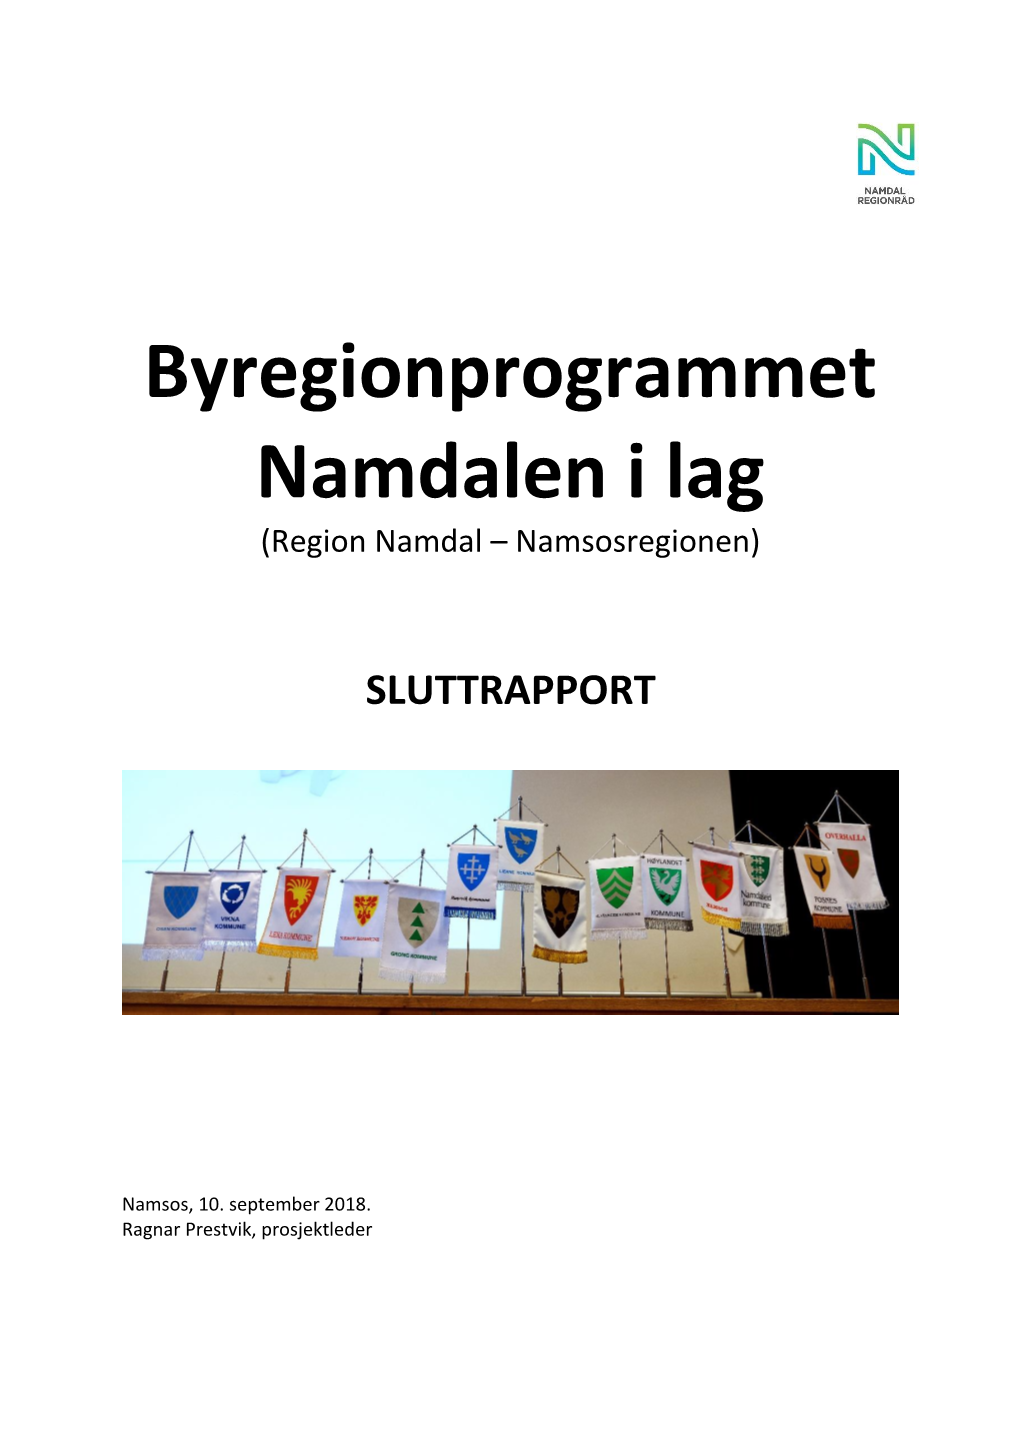 Byregionprogrammet Namdalen I Lag (Region Namdal – Namsosregionen)